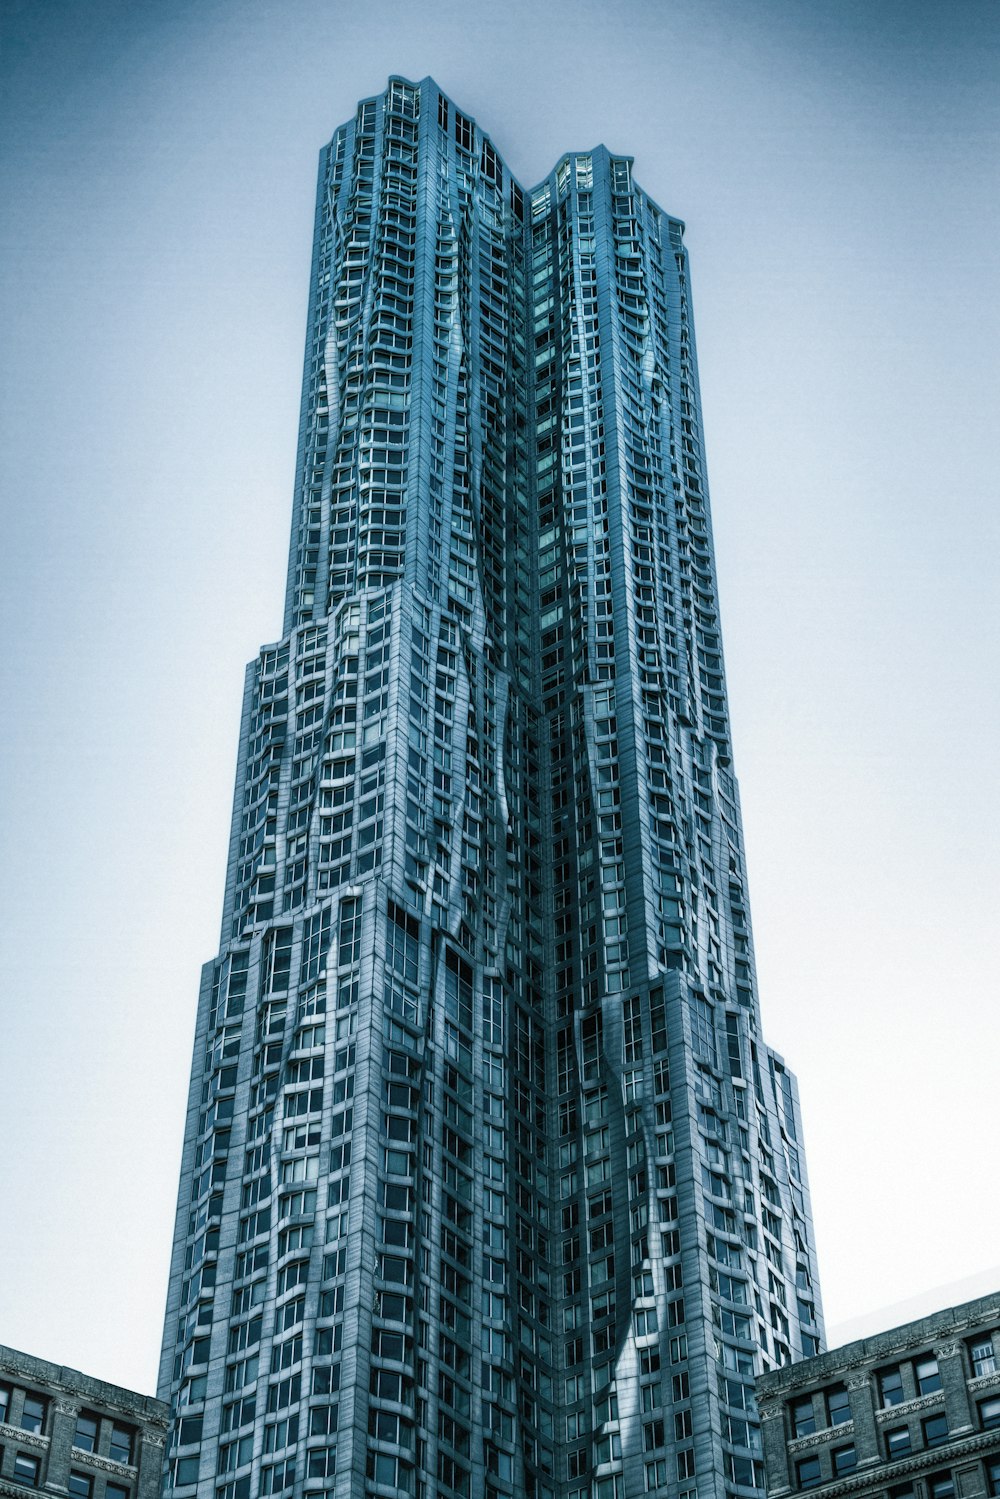 Fotografía de bajo ángulo de edificios de gran altura